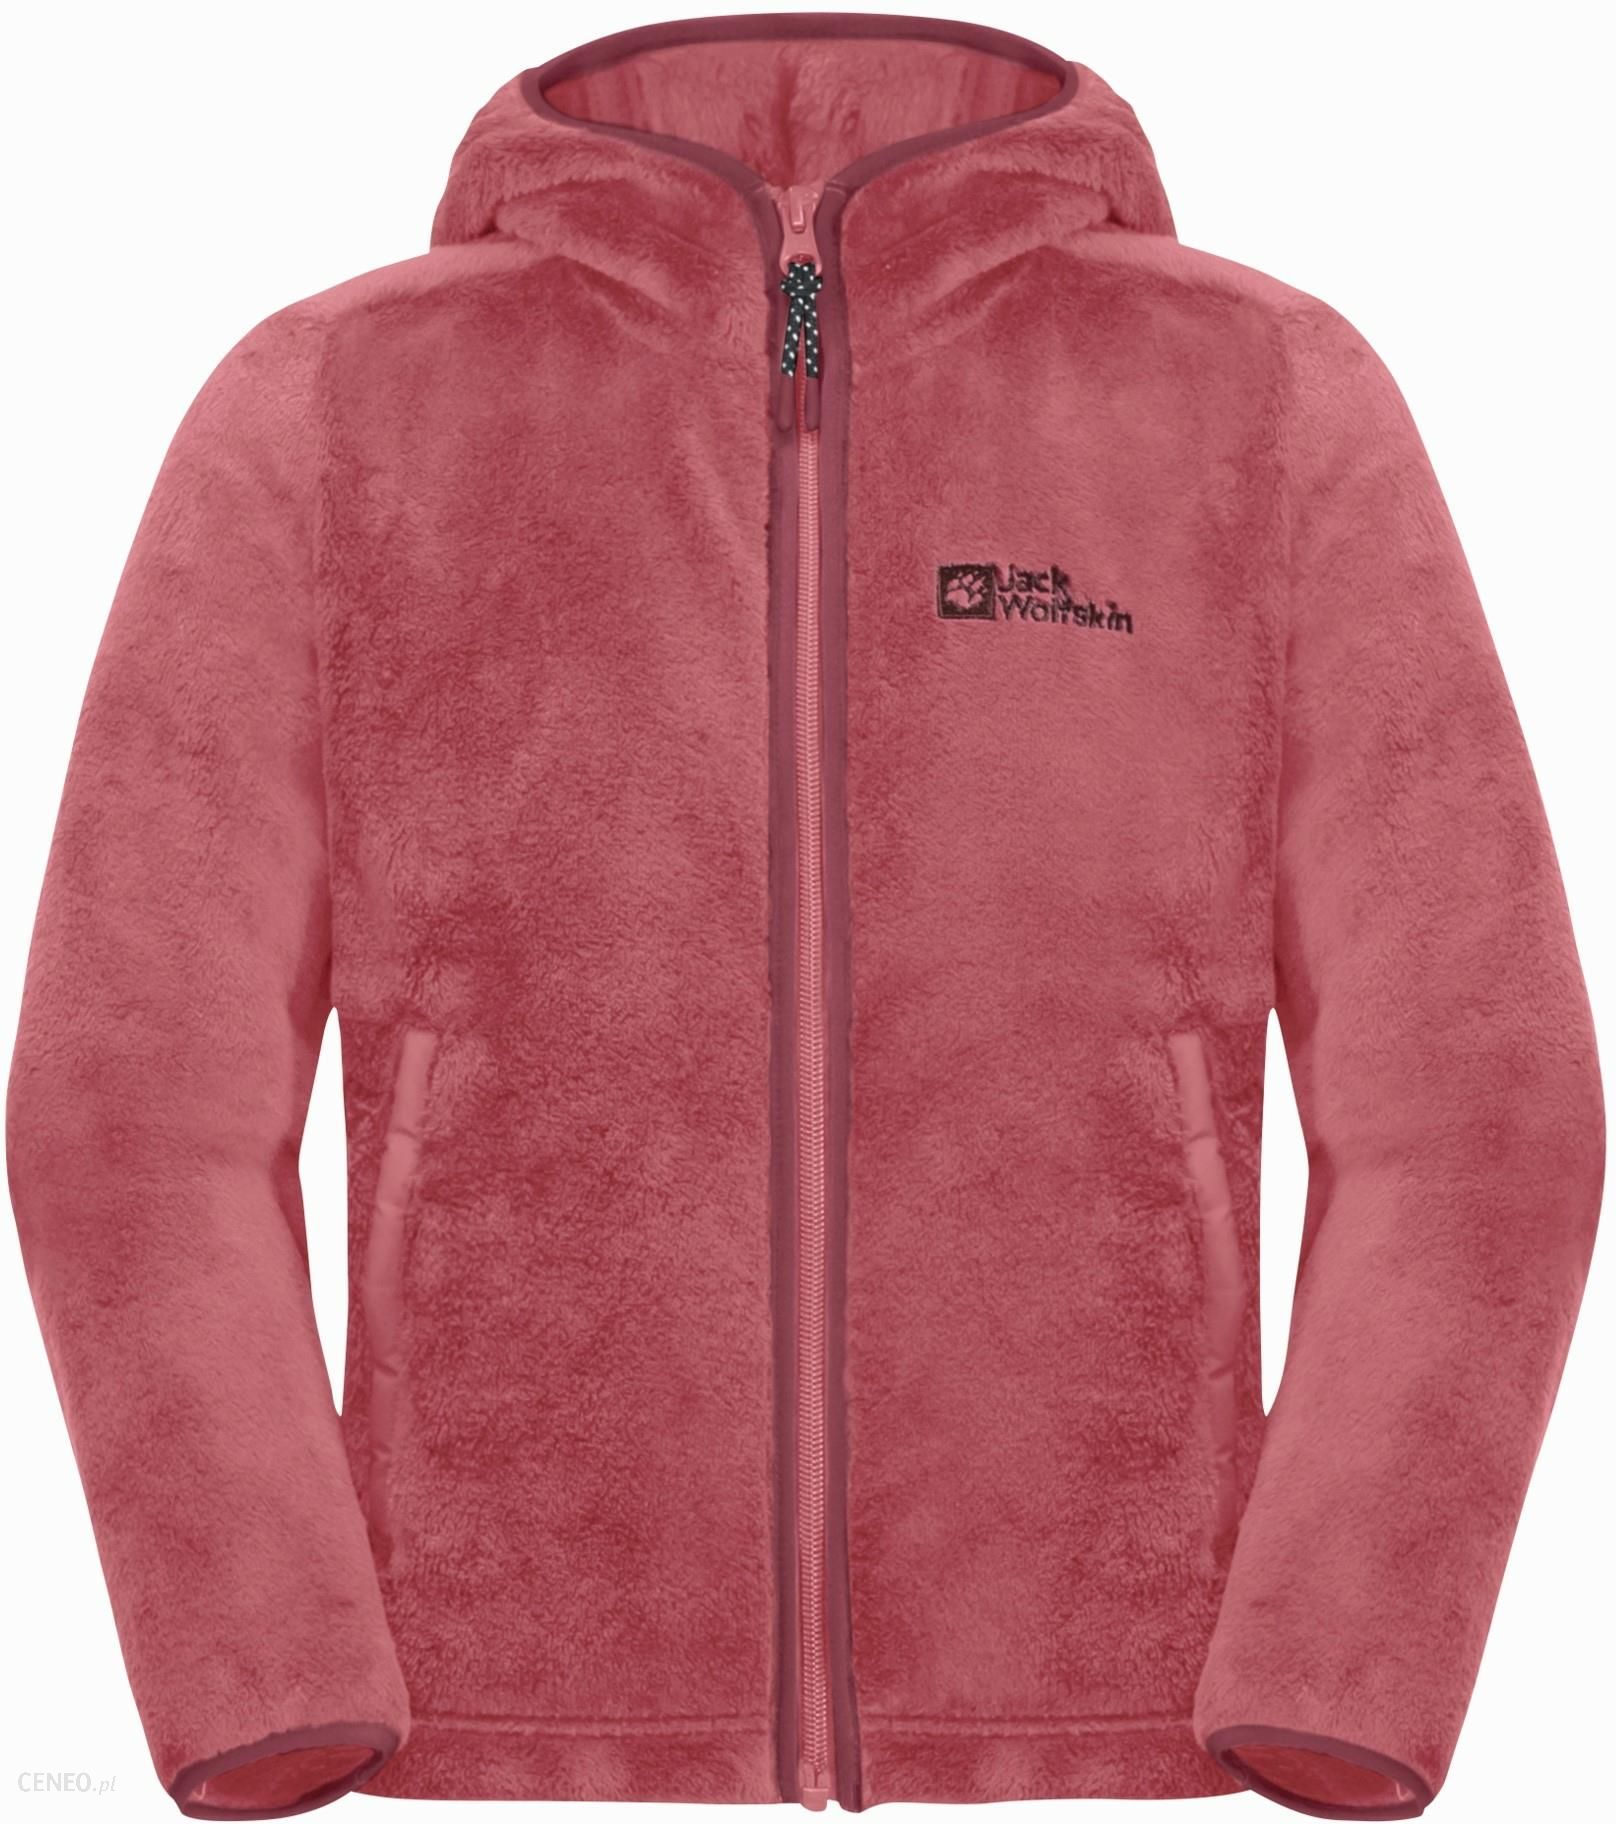 Dziewczęca kurtka polarowa Jack Wolfskin soft JACKET opinie NEPALI pink Ceny - G i